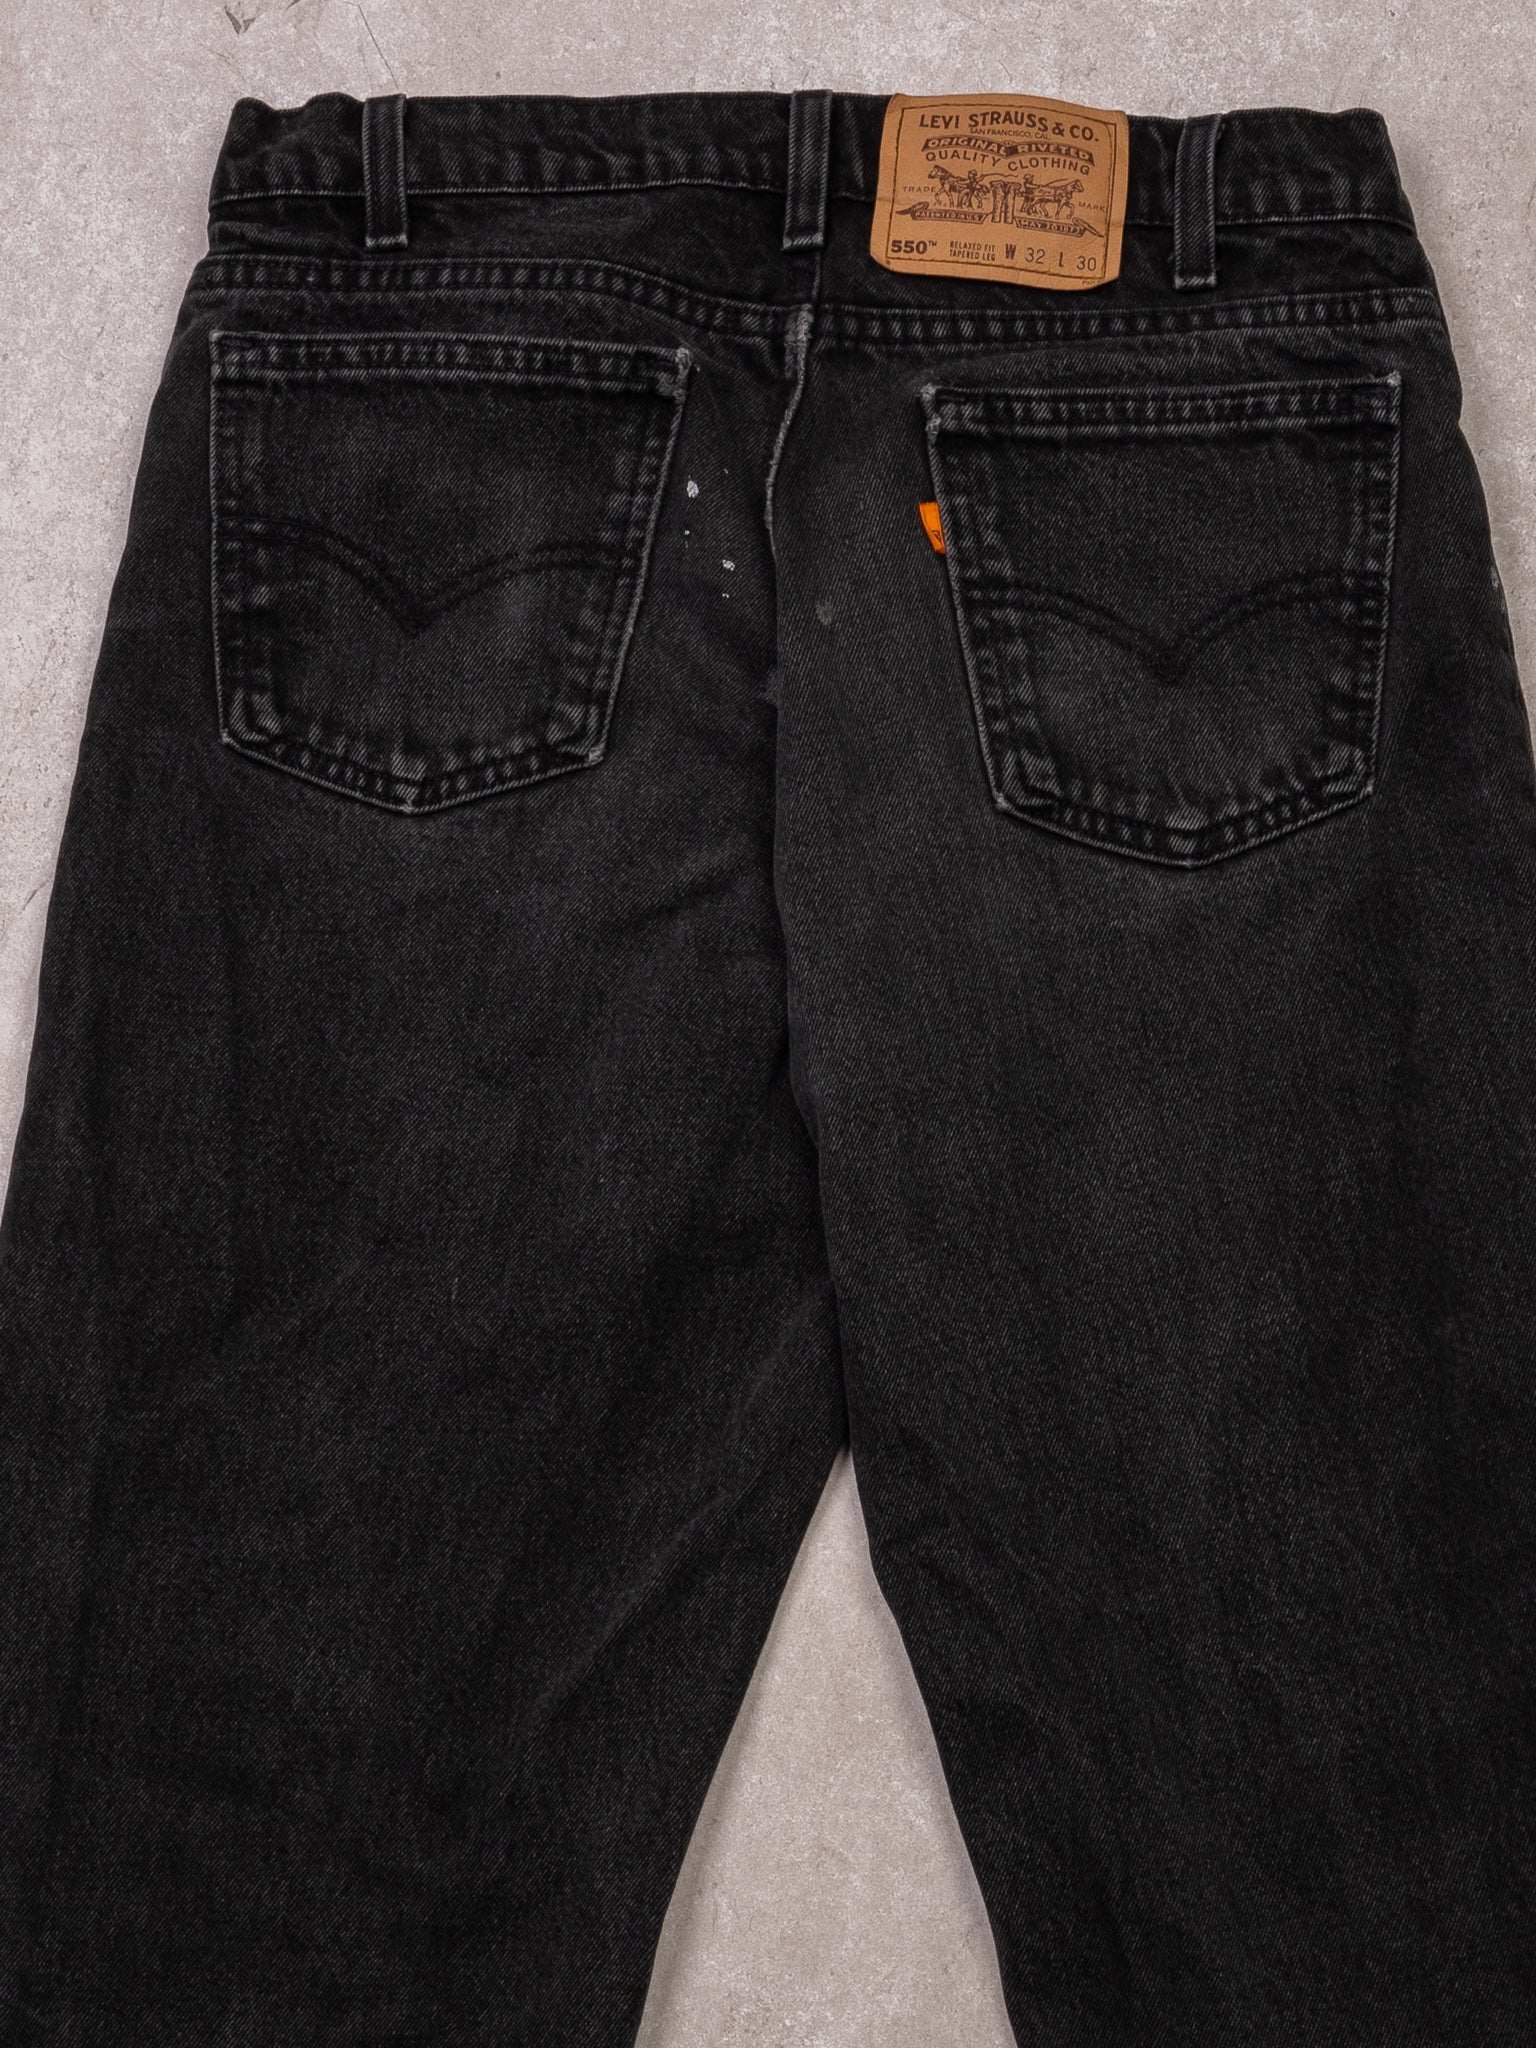 Vintage 1970s Black Levi 550 Orange Tab Jeans (30 x 30)